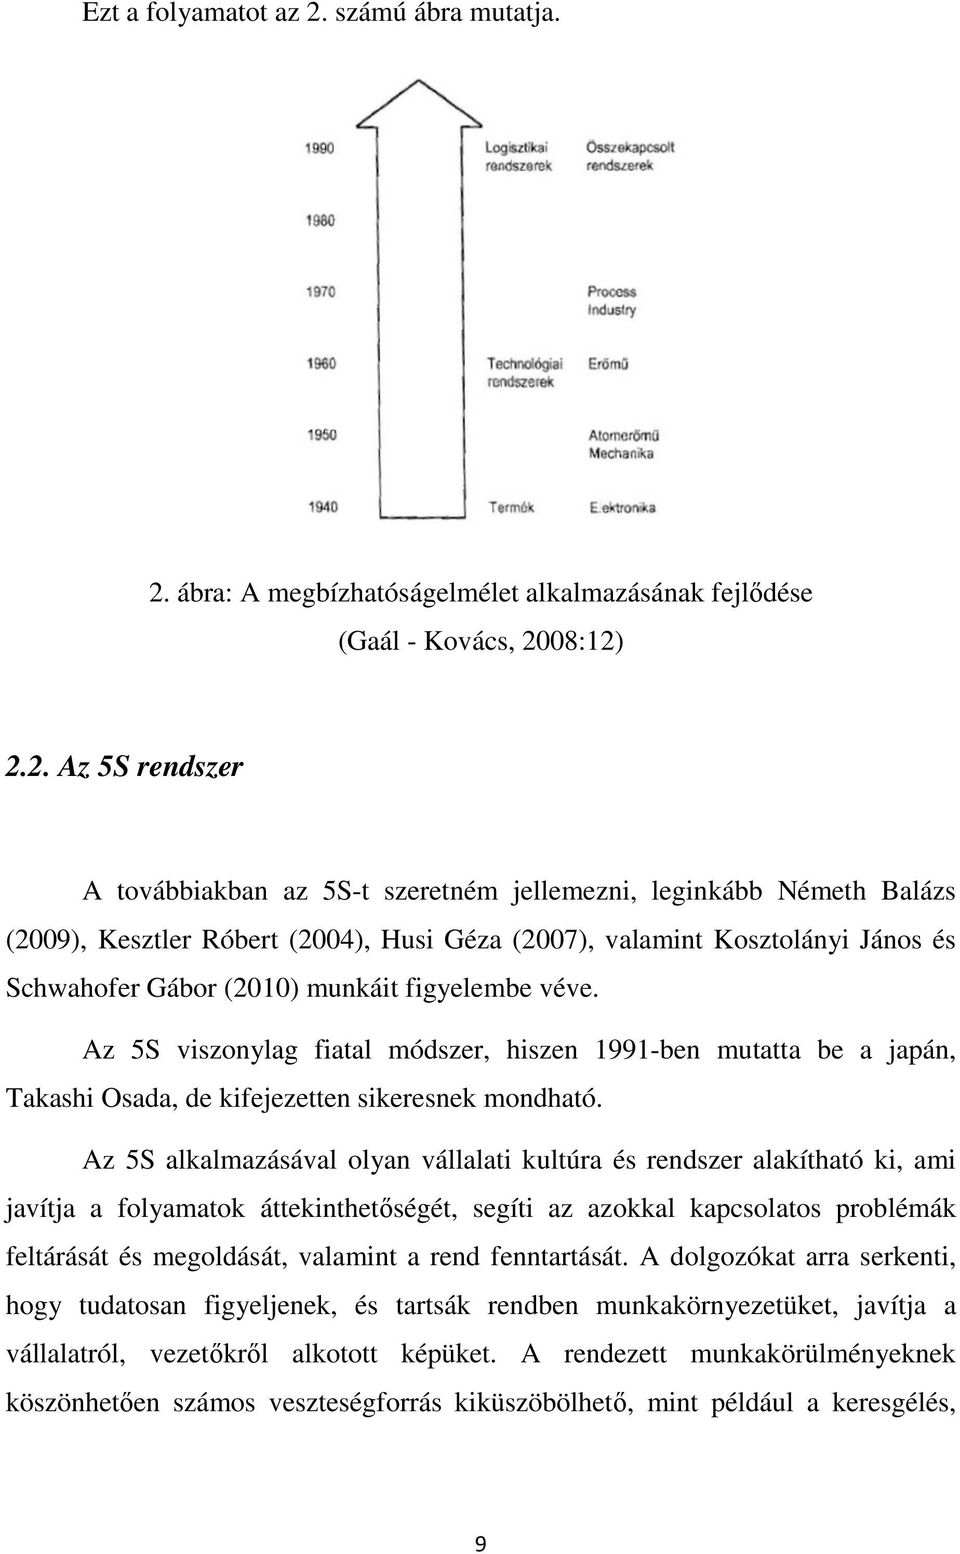 ábra: A megbízhatóságelmélet alkalmazásának fejlıdése (Gaál - Kovács, 20